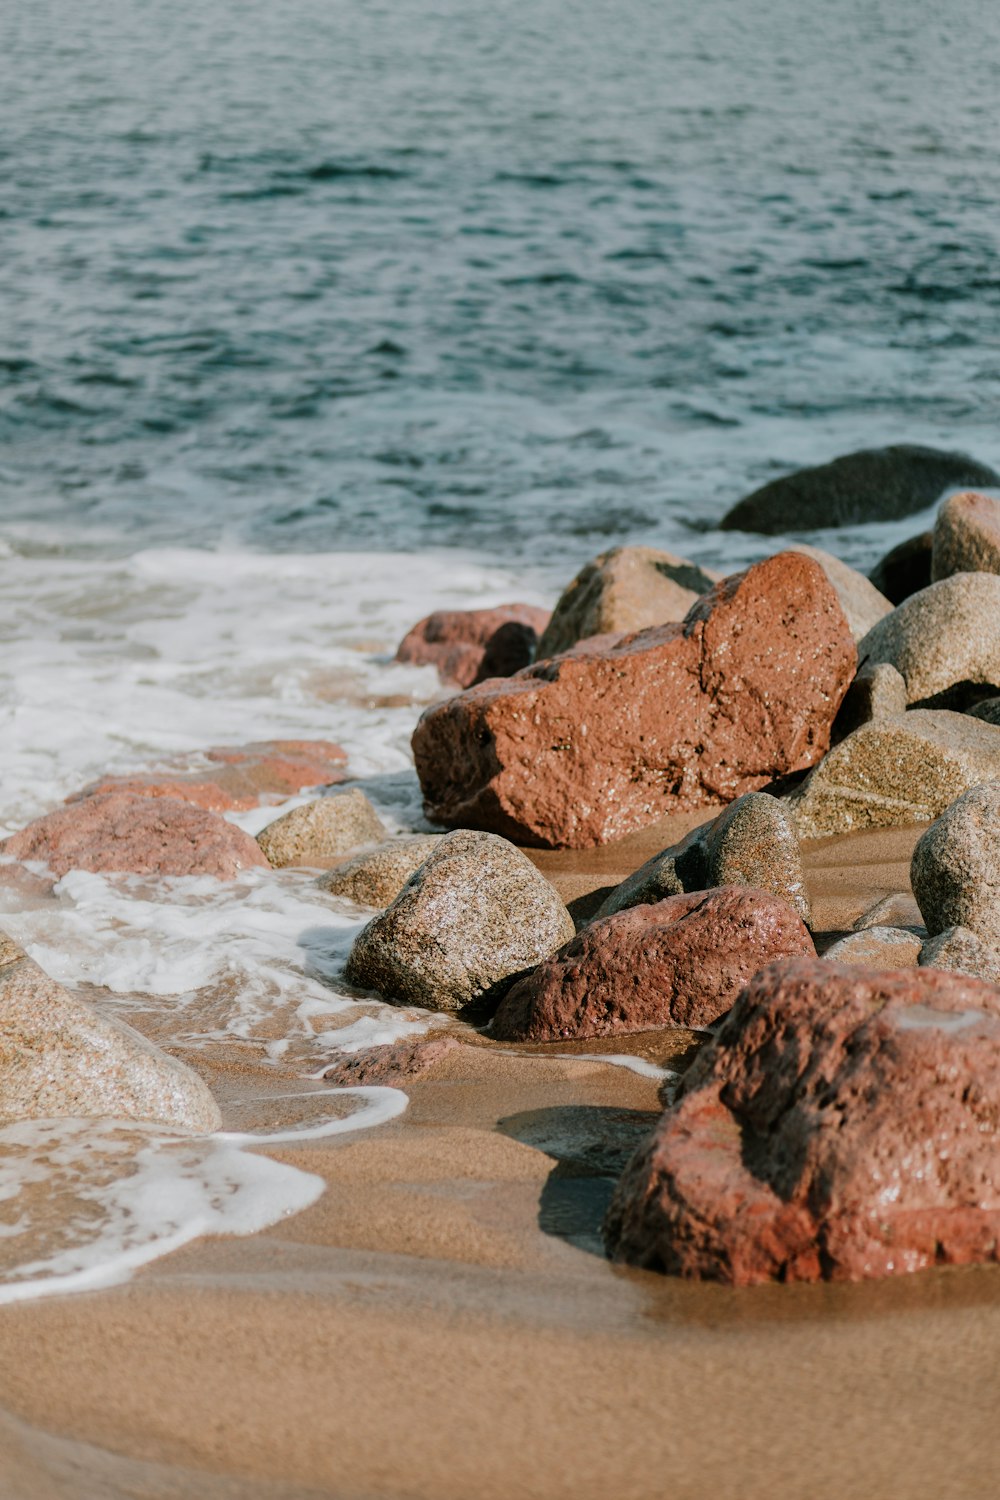 rochas marrons e cinzentas na costa durante o dia